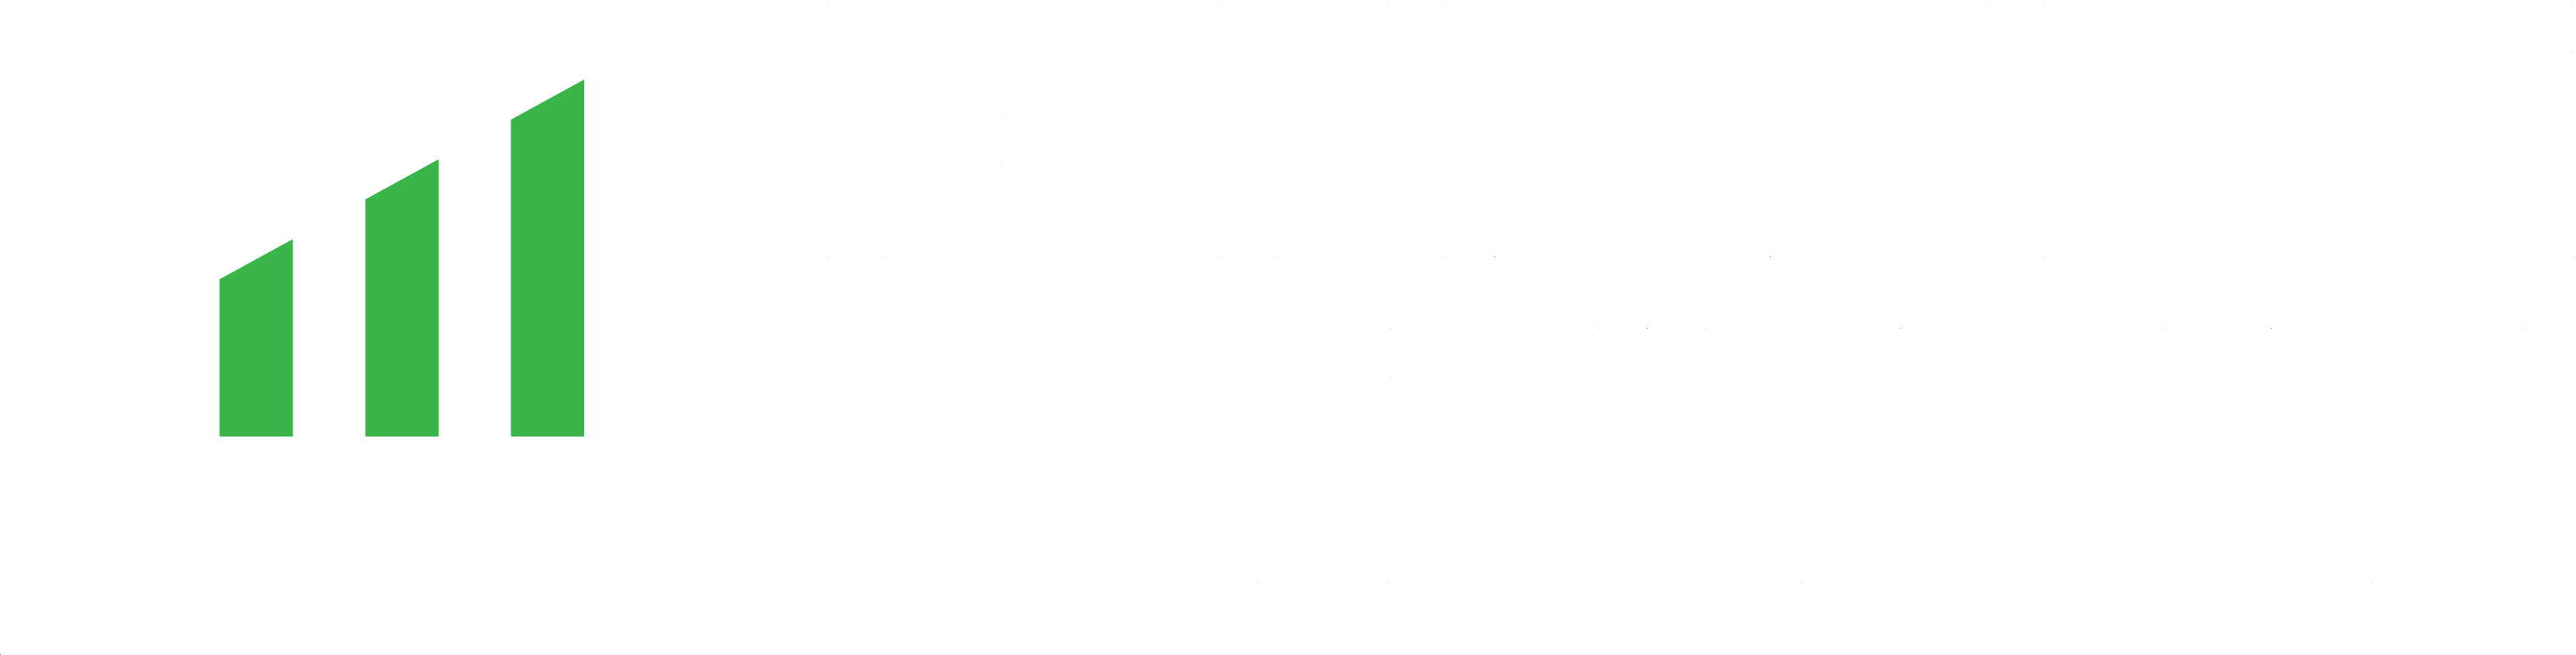 Finance Otzyvy